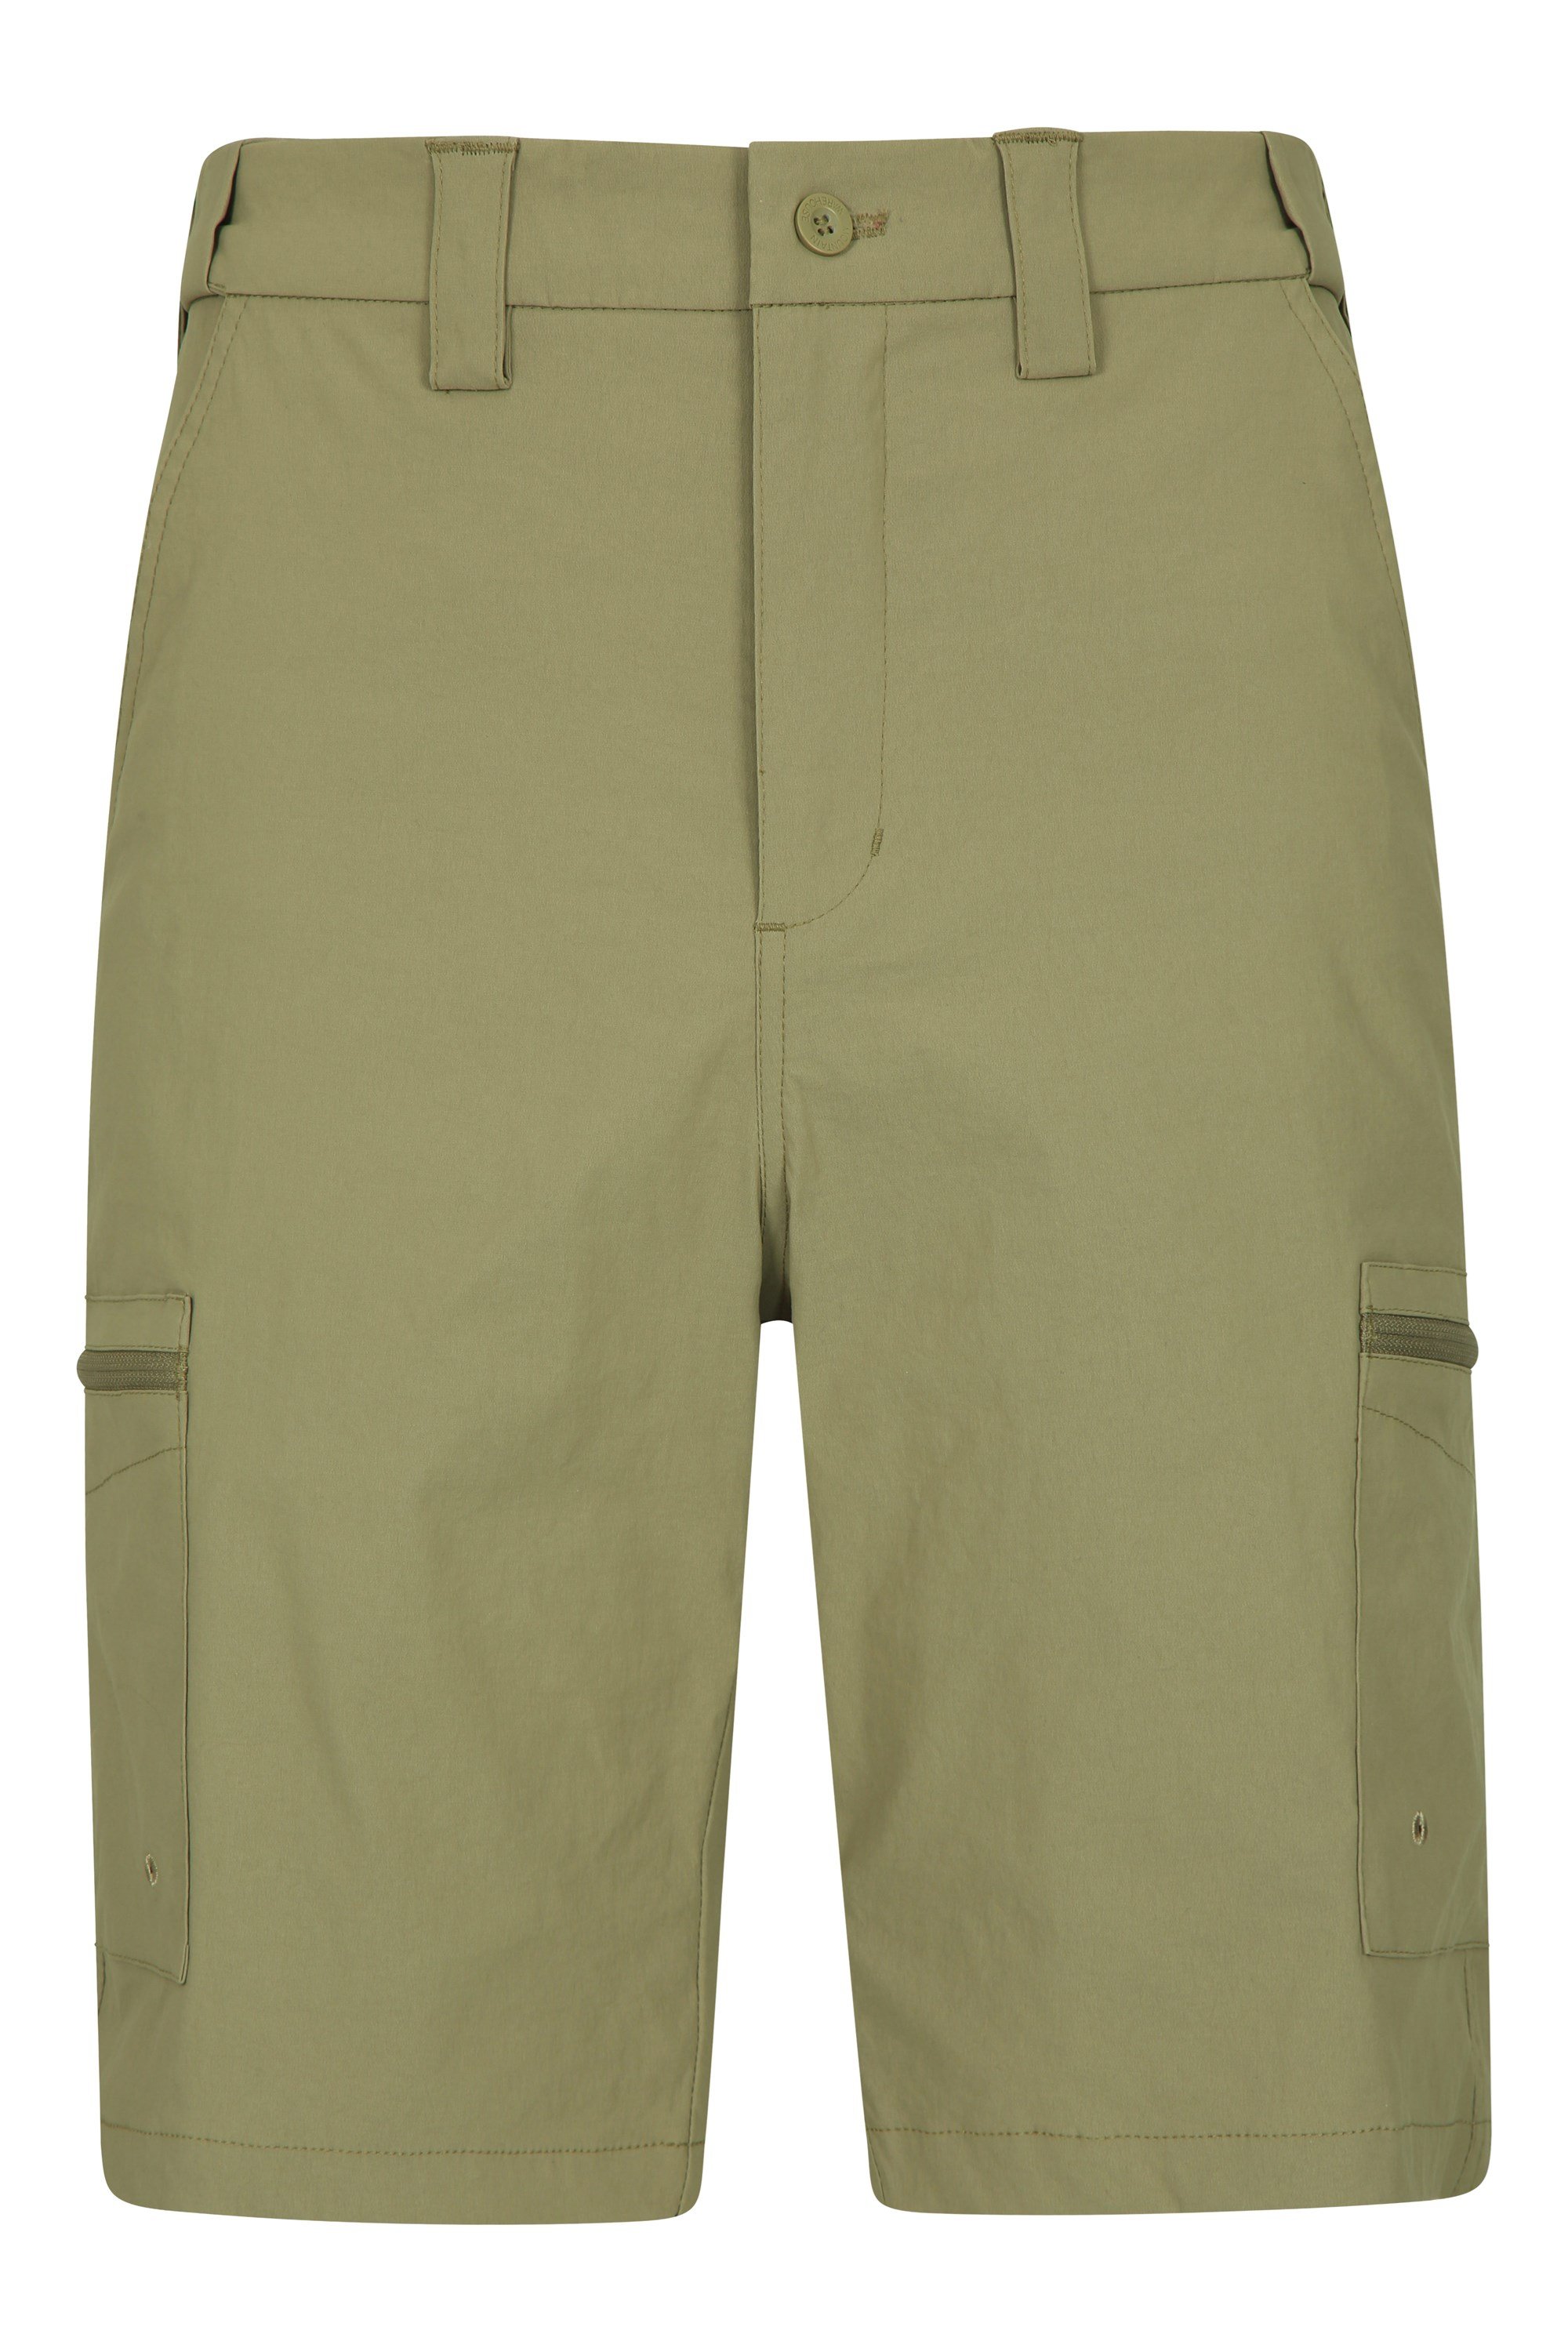 per Camminare Shorts durevoli del carico del Cotone della saia di 100% Shorts durevoli di Estate 6 Tasche Funzionare Mountain Warehouse Shorts di Lakeside Mens 